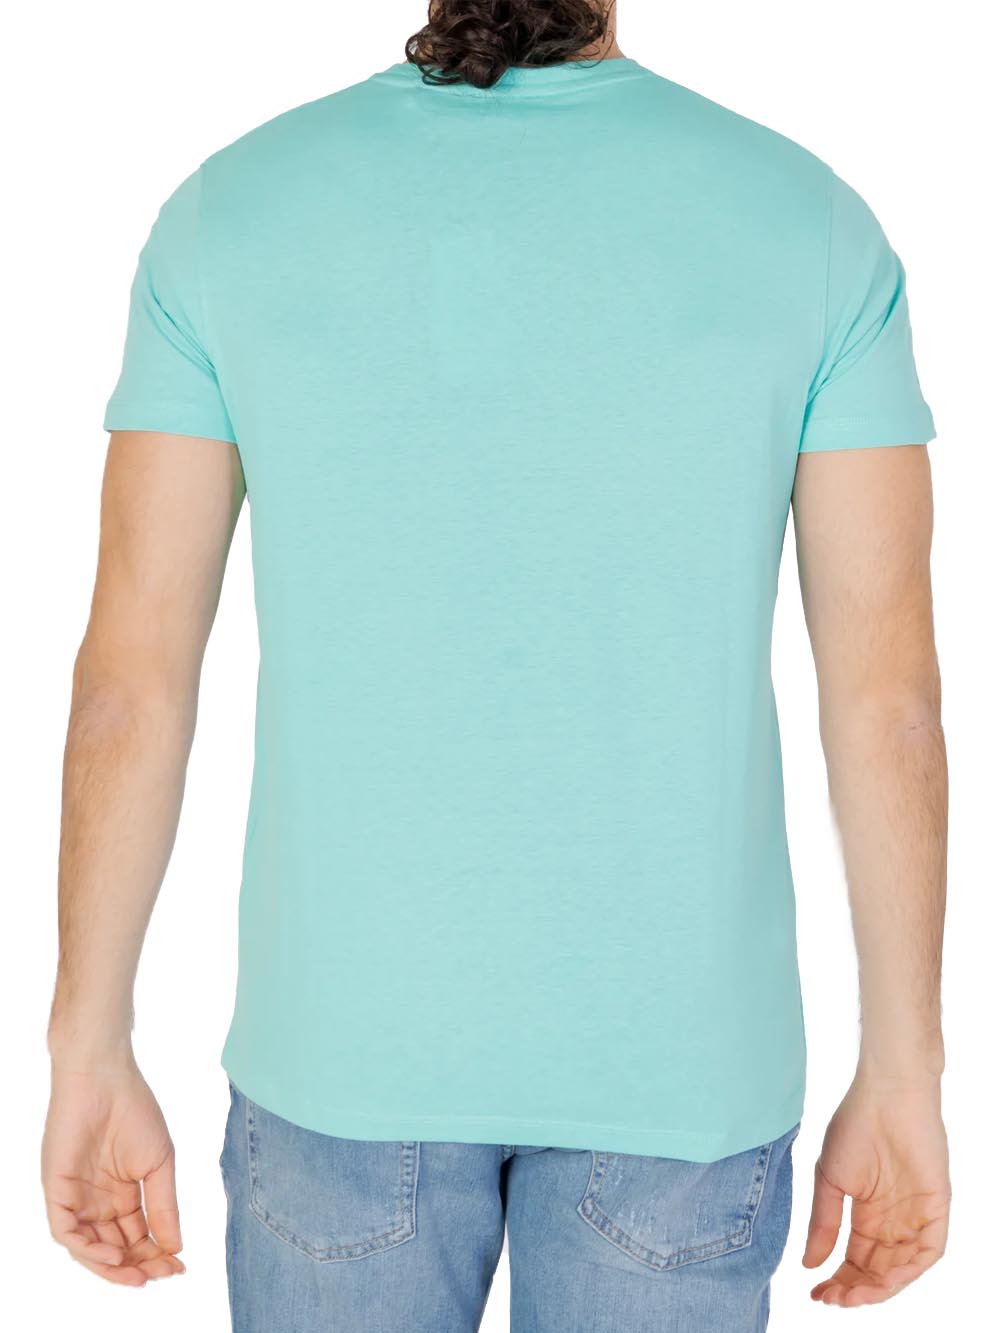 U.S. Polo Assn. T-shirt Uomo Verde acqua